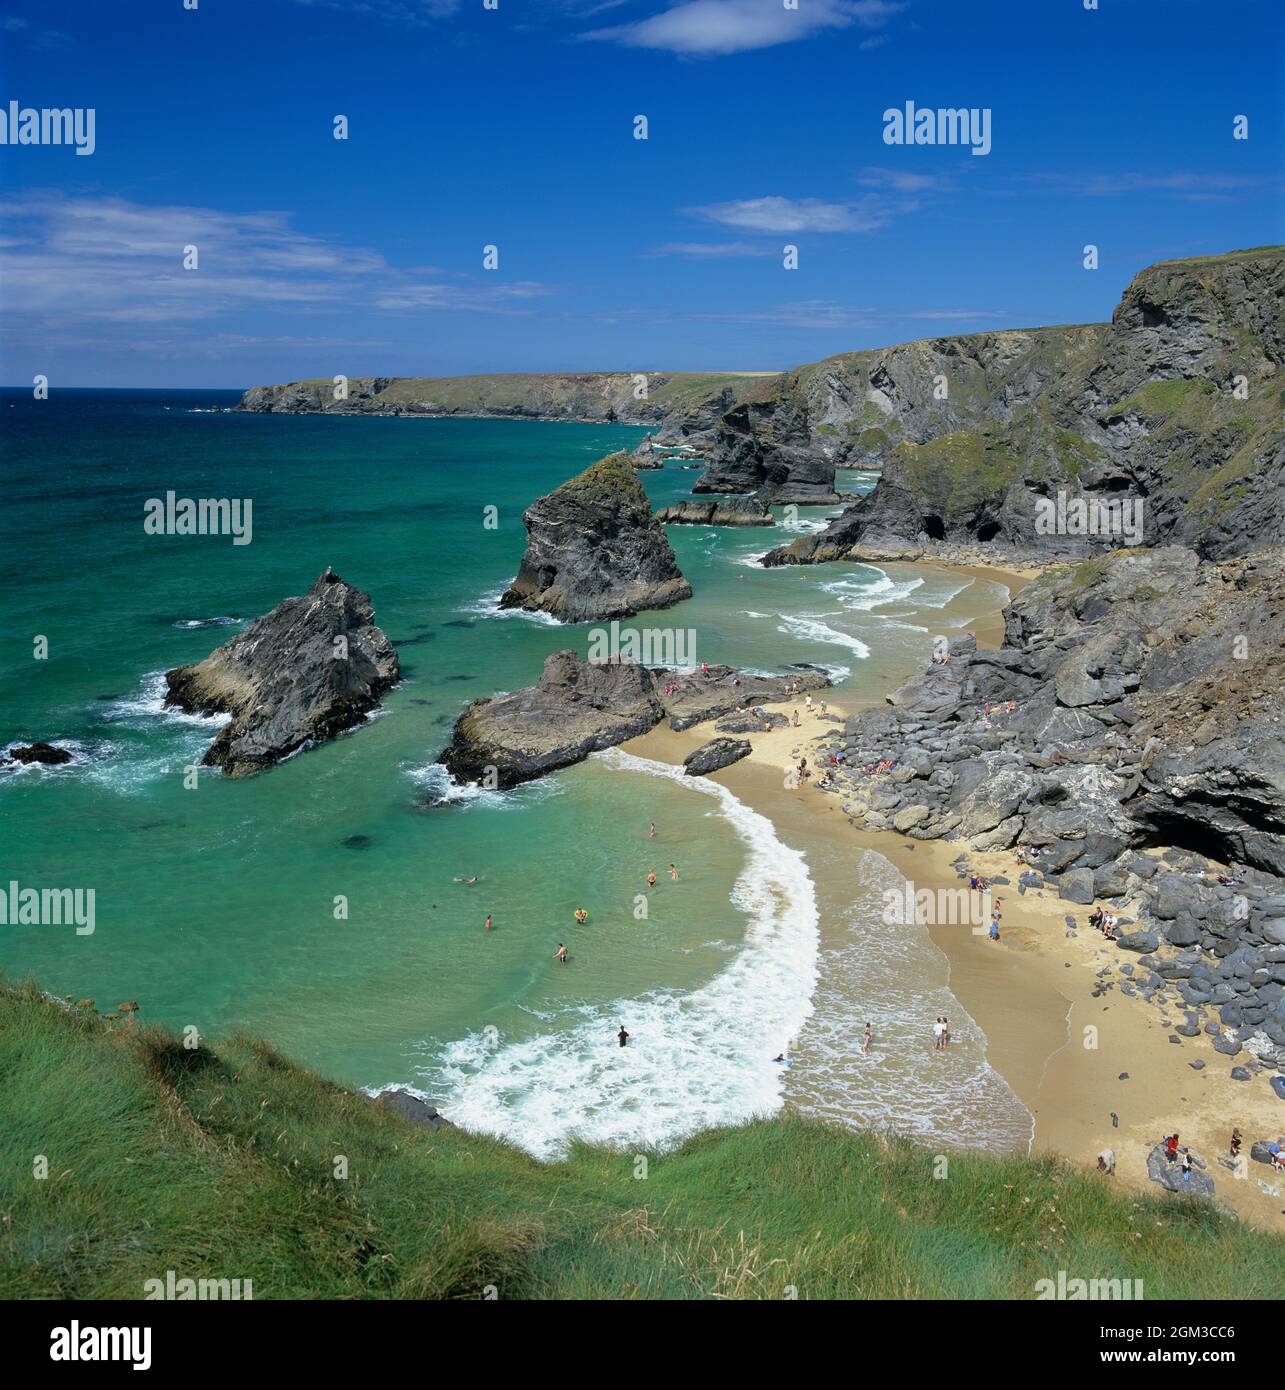 La plage et le littoral de Bedrithan Steps sur la côte nord de Cornouailles, près de Newquay, Cornouailles, Angleterre, Royaume-Uni, Europe Banque D'Images